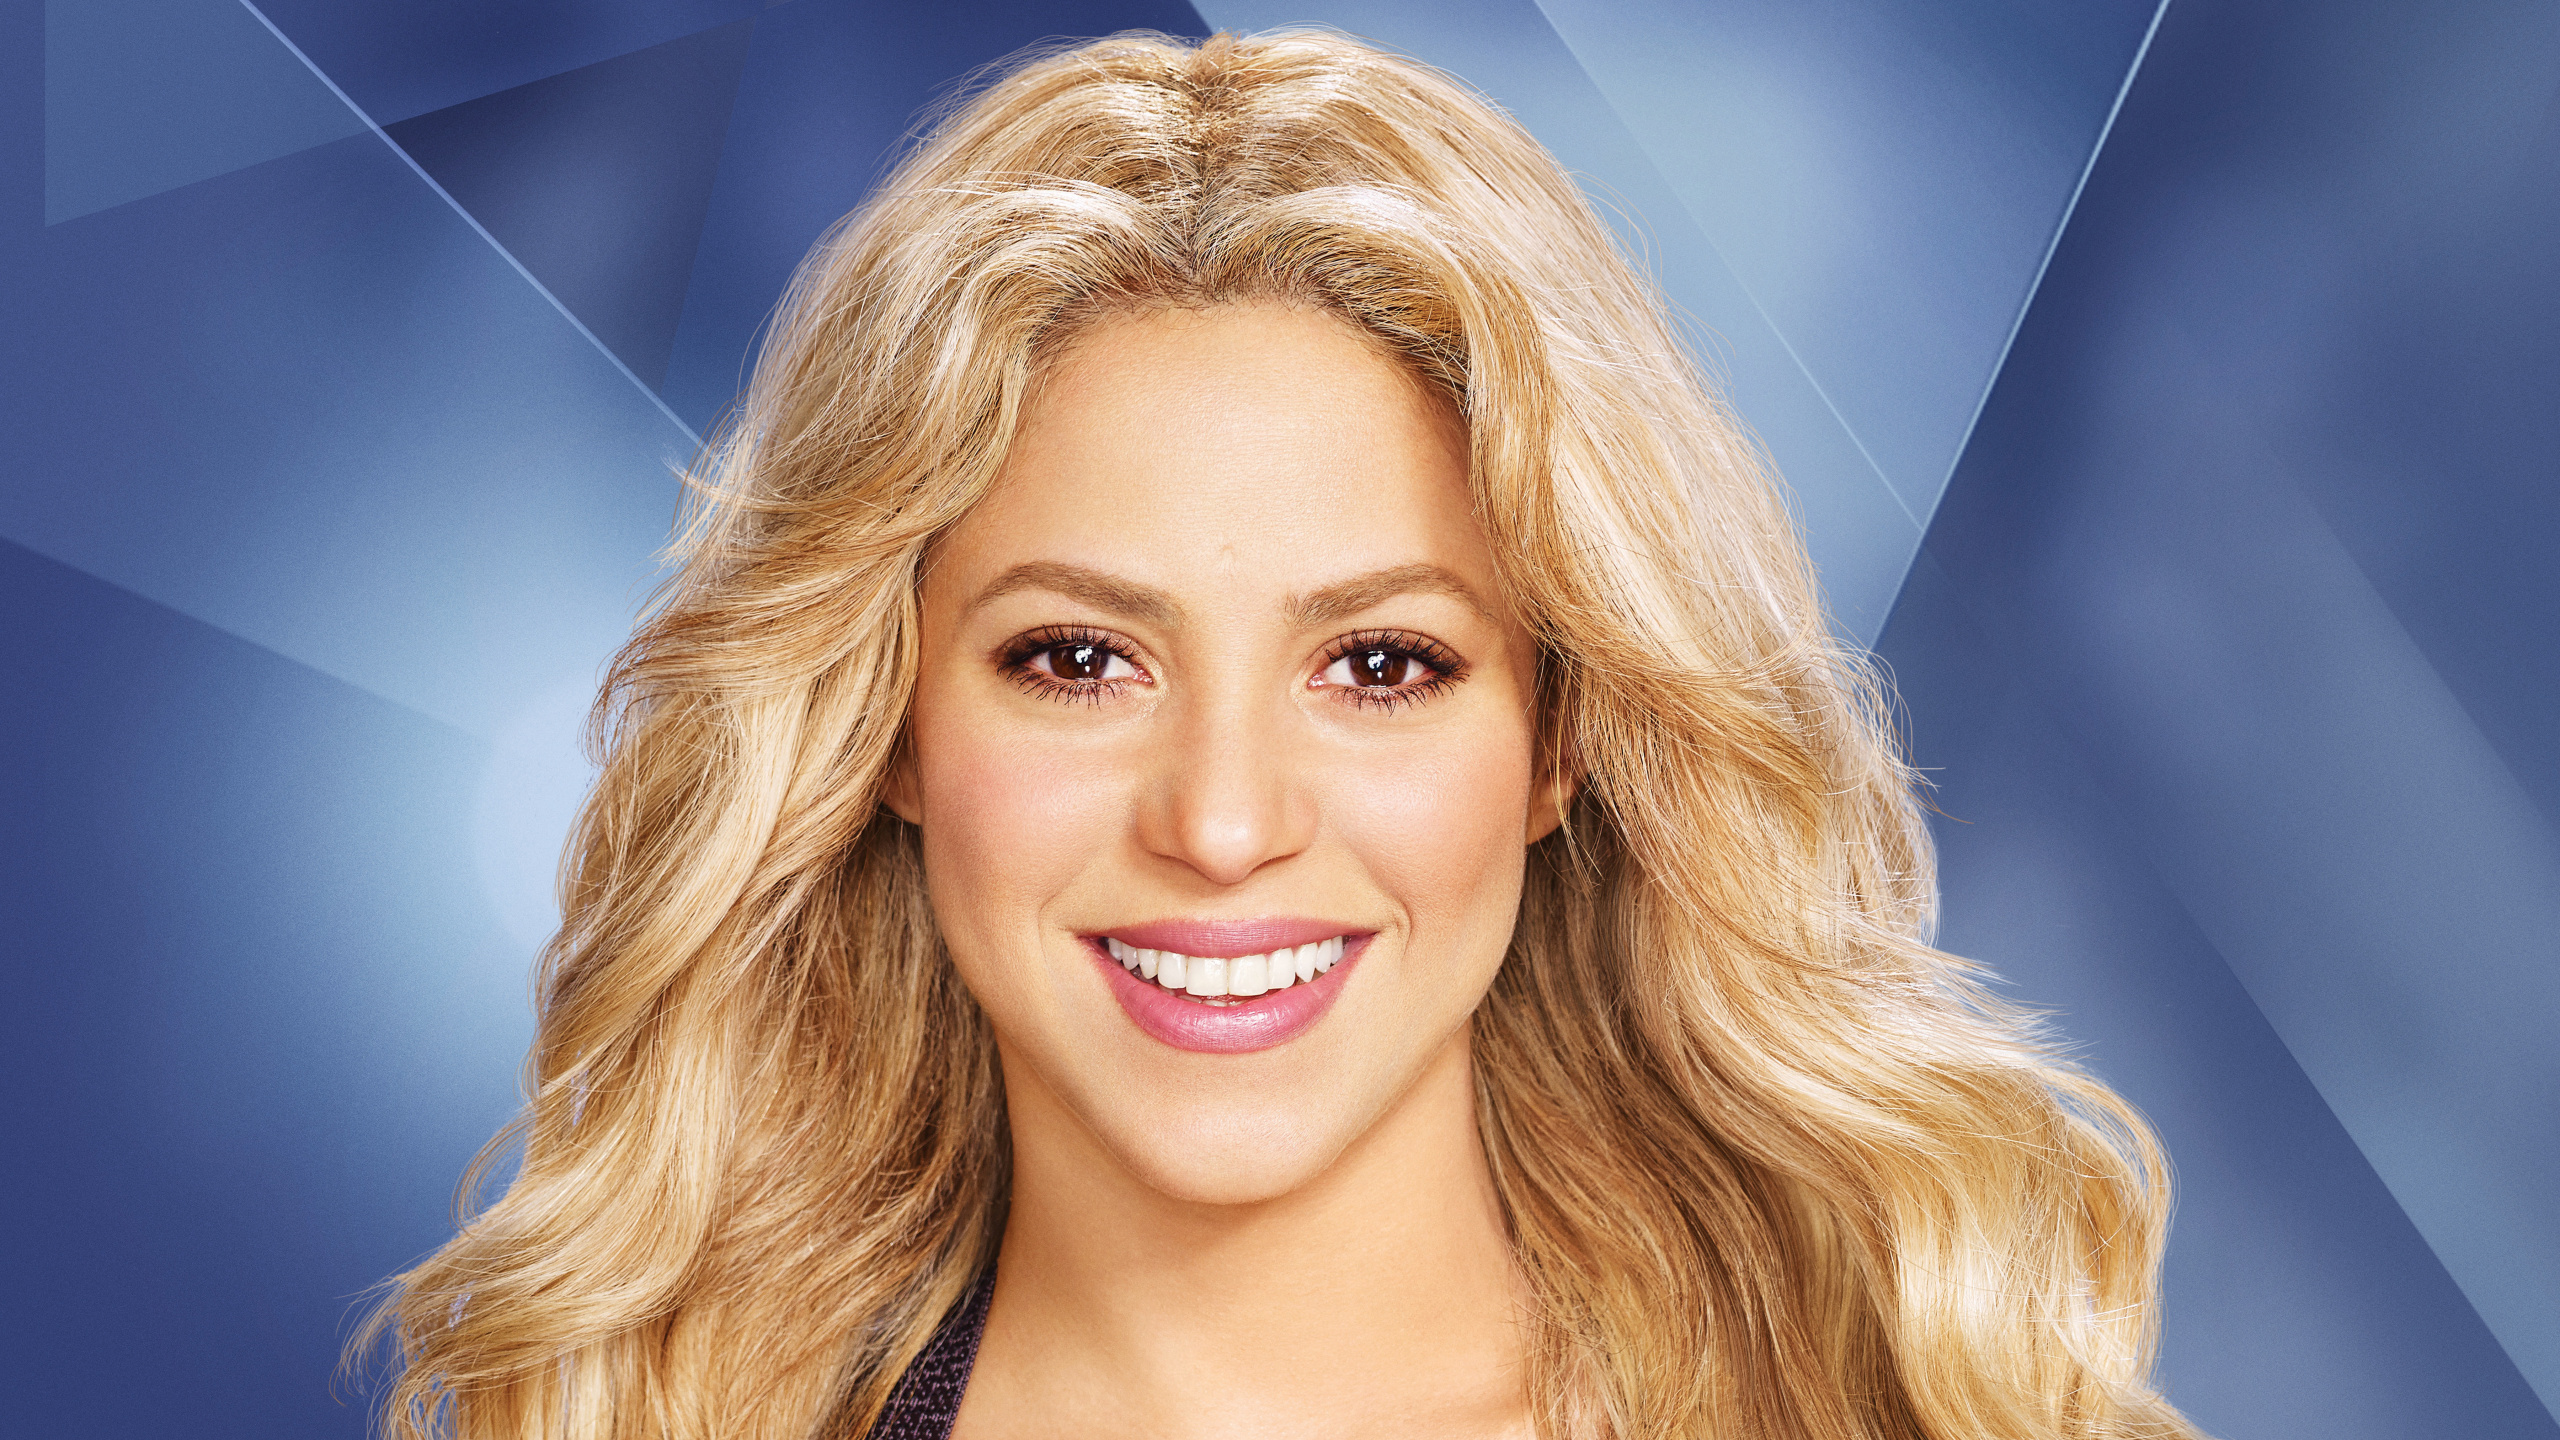 Shakira, Berühmtheit, Haar, Gesicht, Blonde. Wallpaper in 2560x1440 Resolution